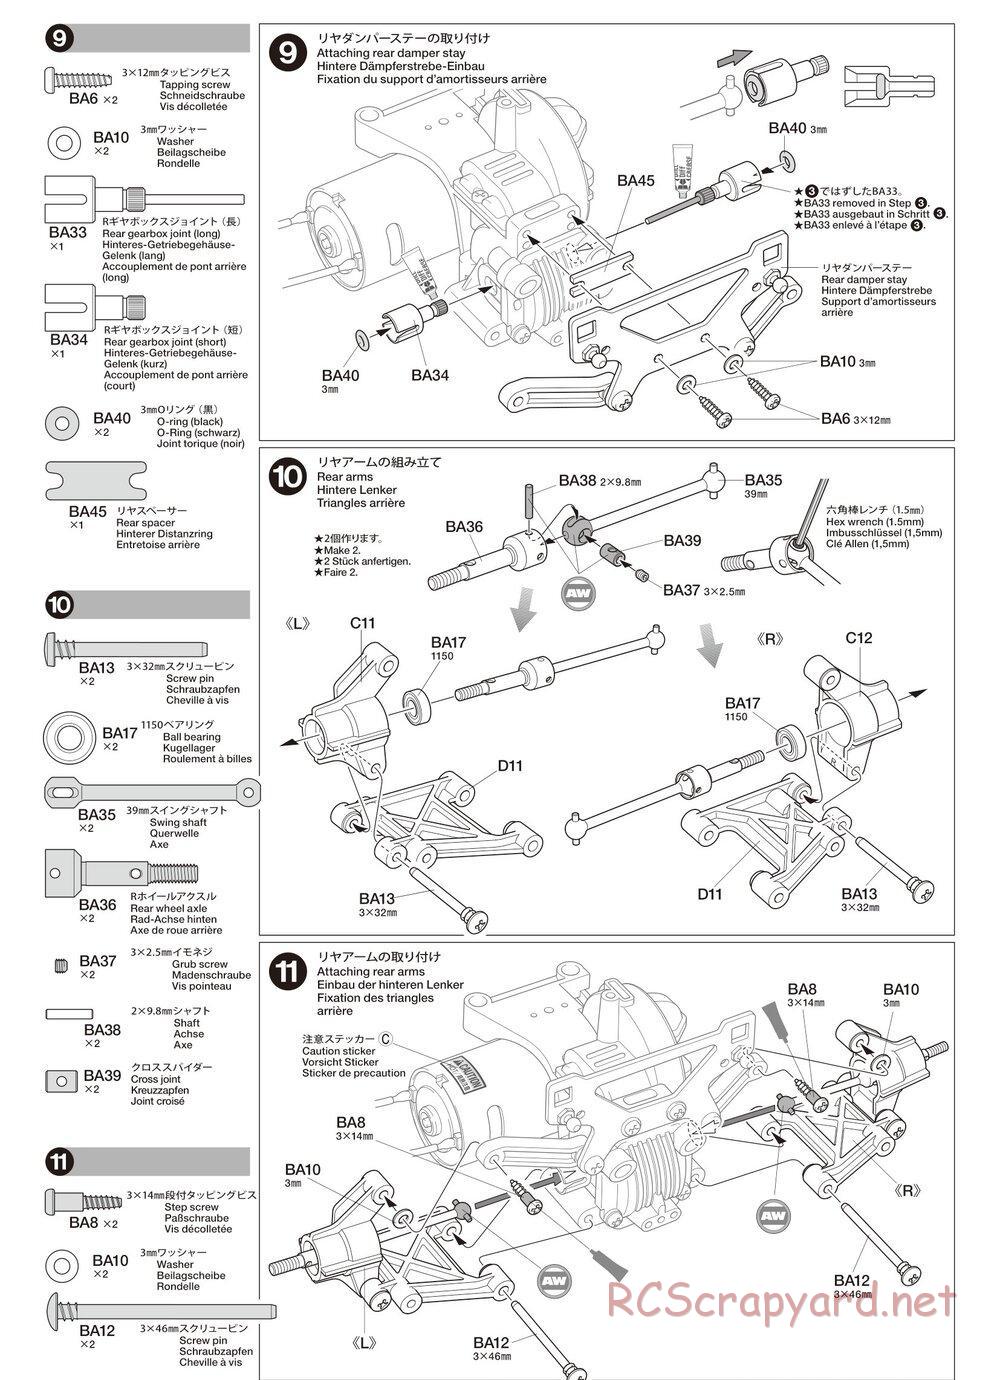 Tamiya - TA02SW Chassis - Manual - Page 7